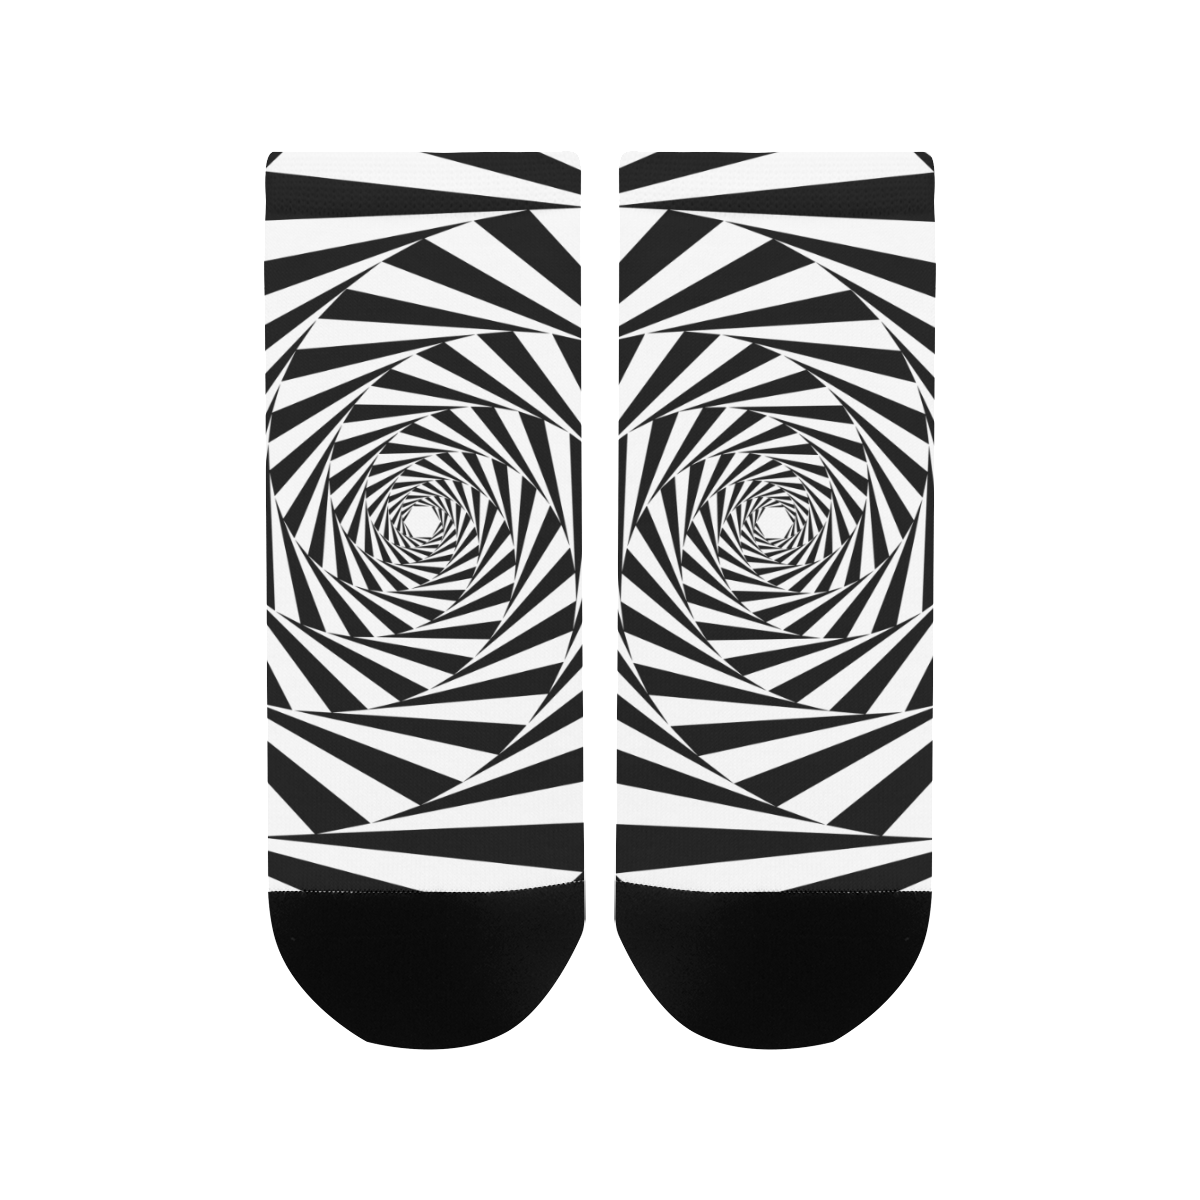 Spiral Women's Ankle Socks